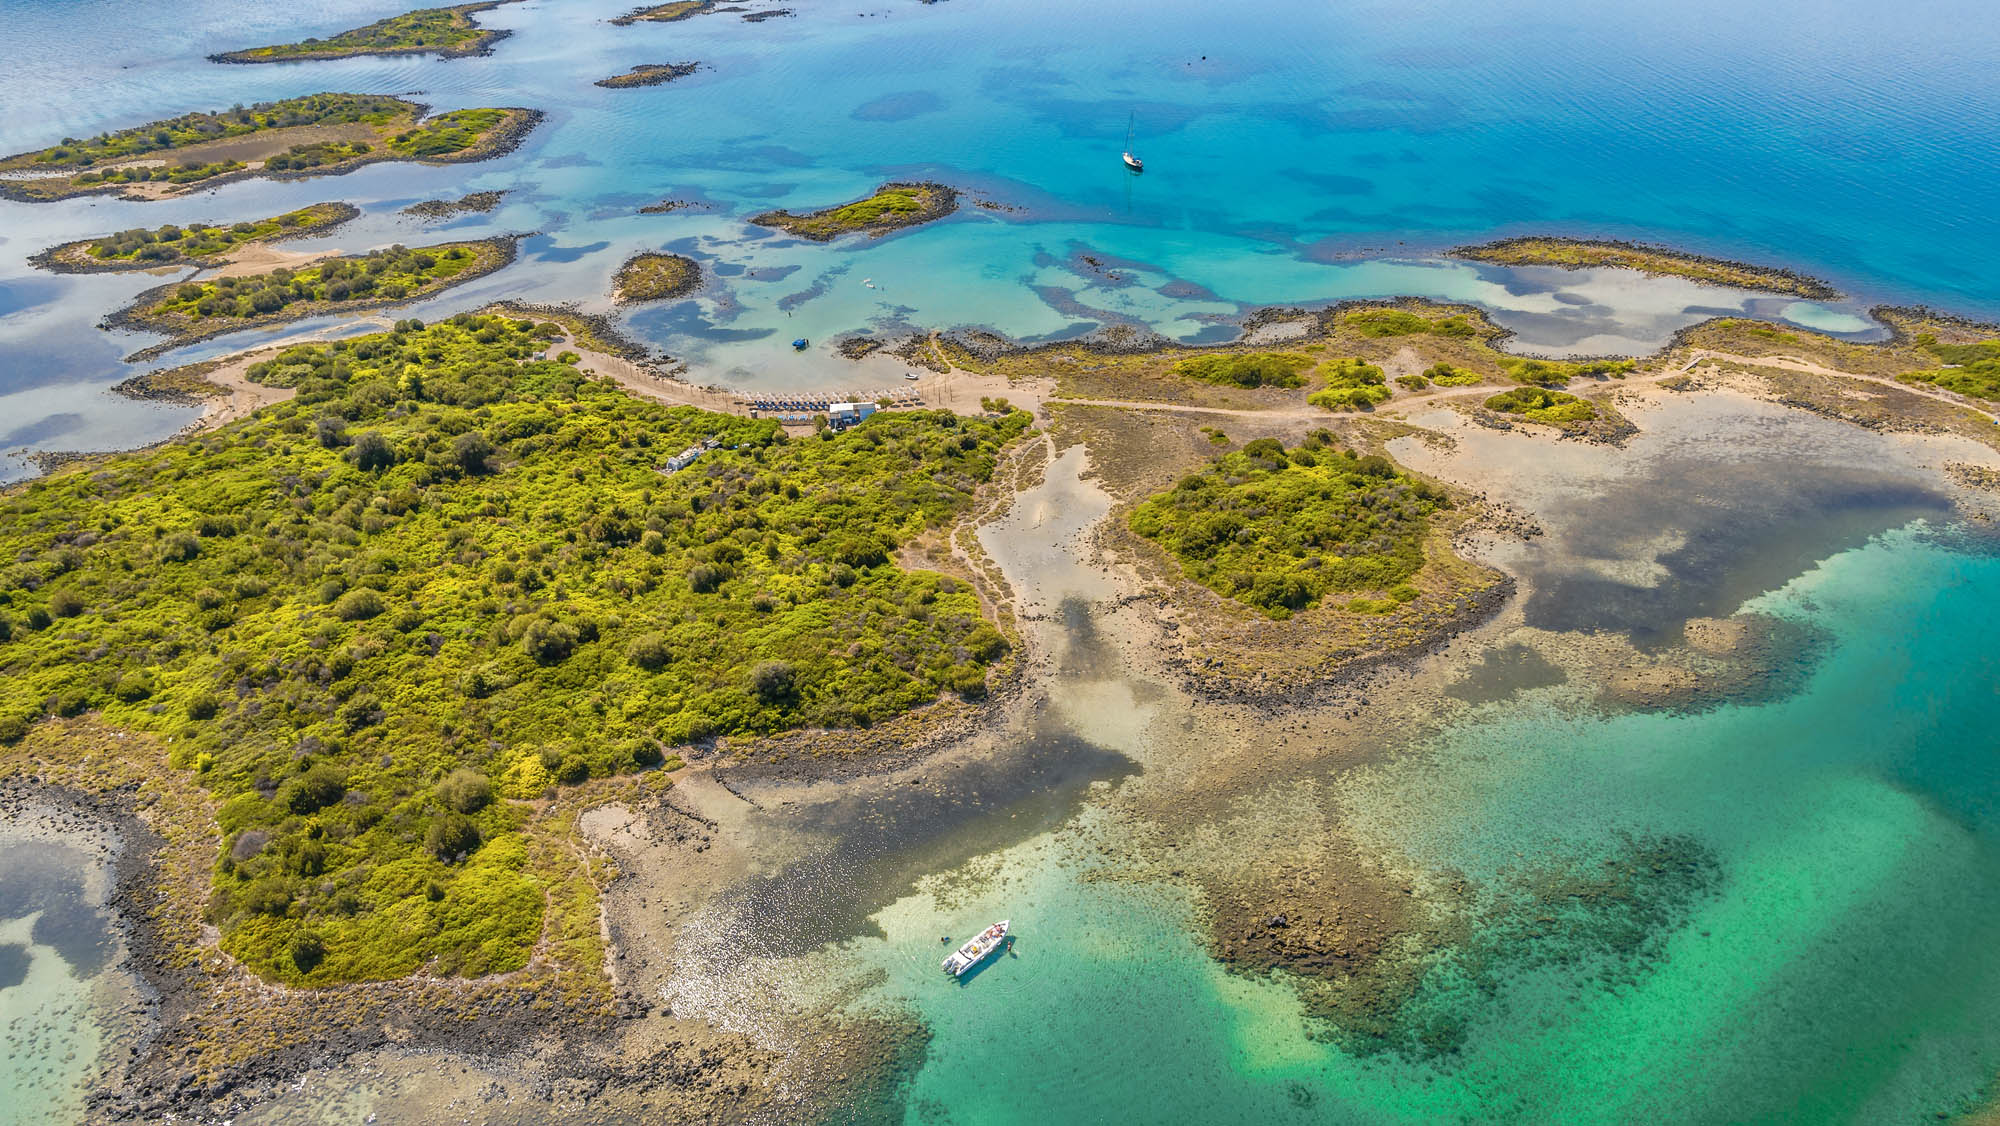 Widok z lotu ptaka na Lichadonisie, archipelag dziewiczych wysepek w pobliżu wyspy Evia